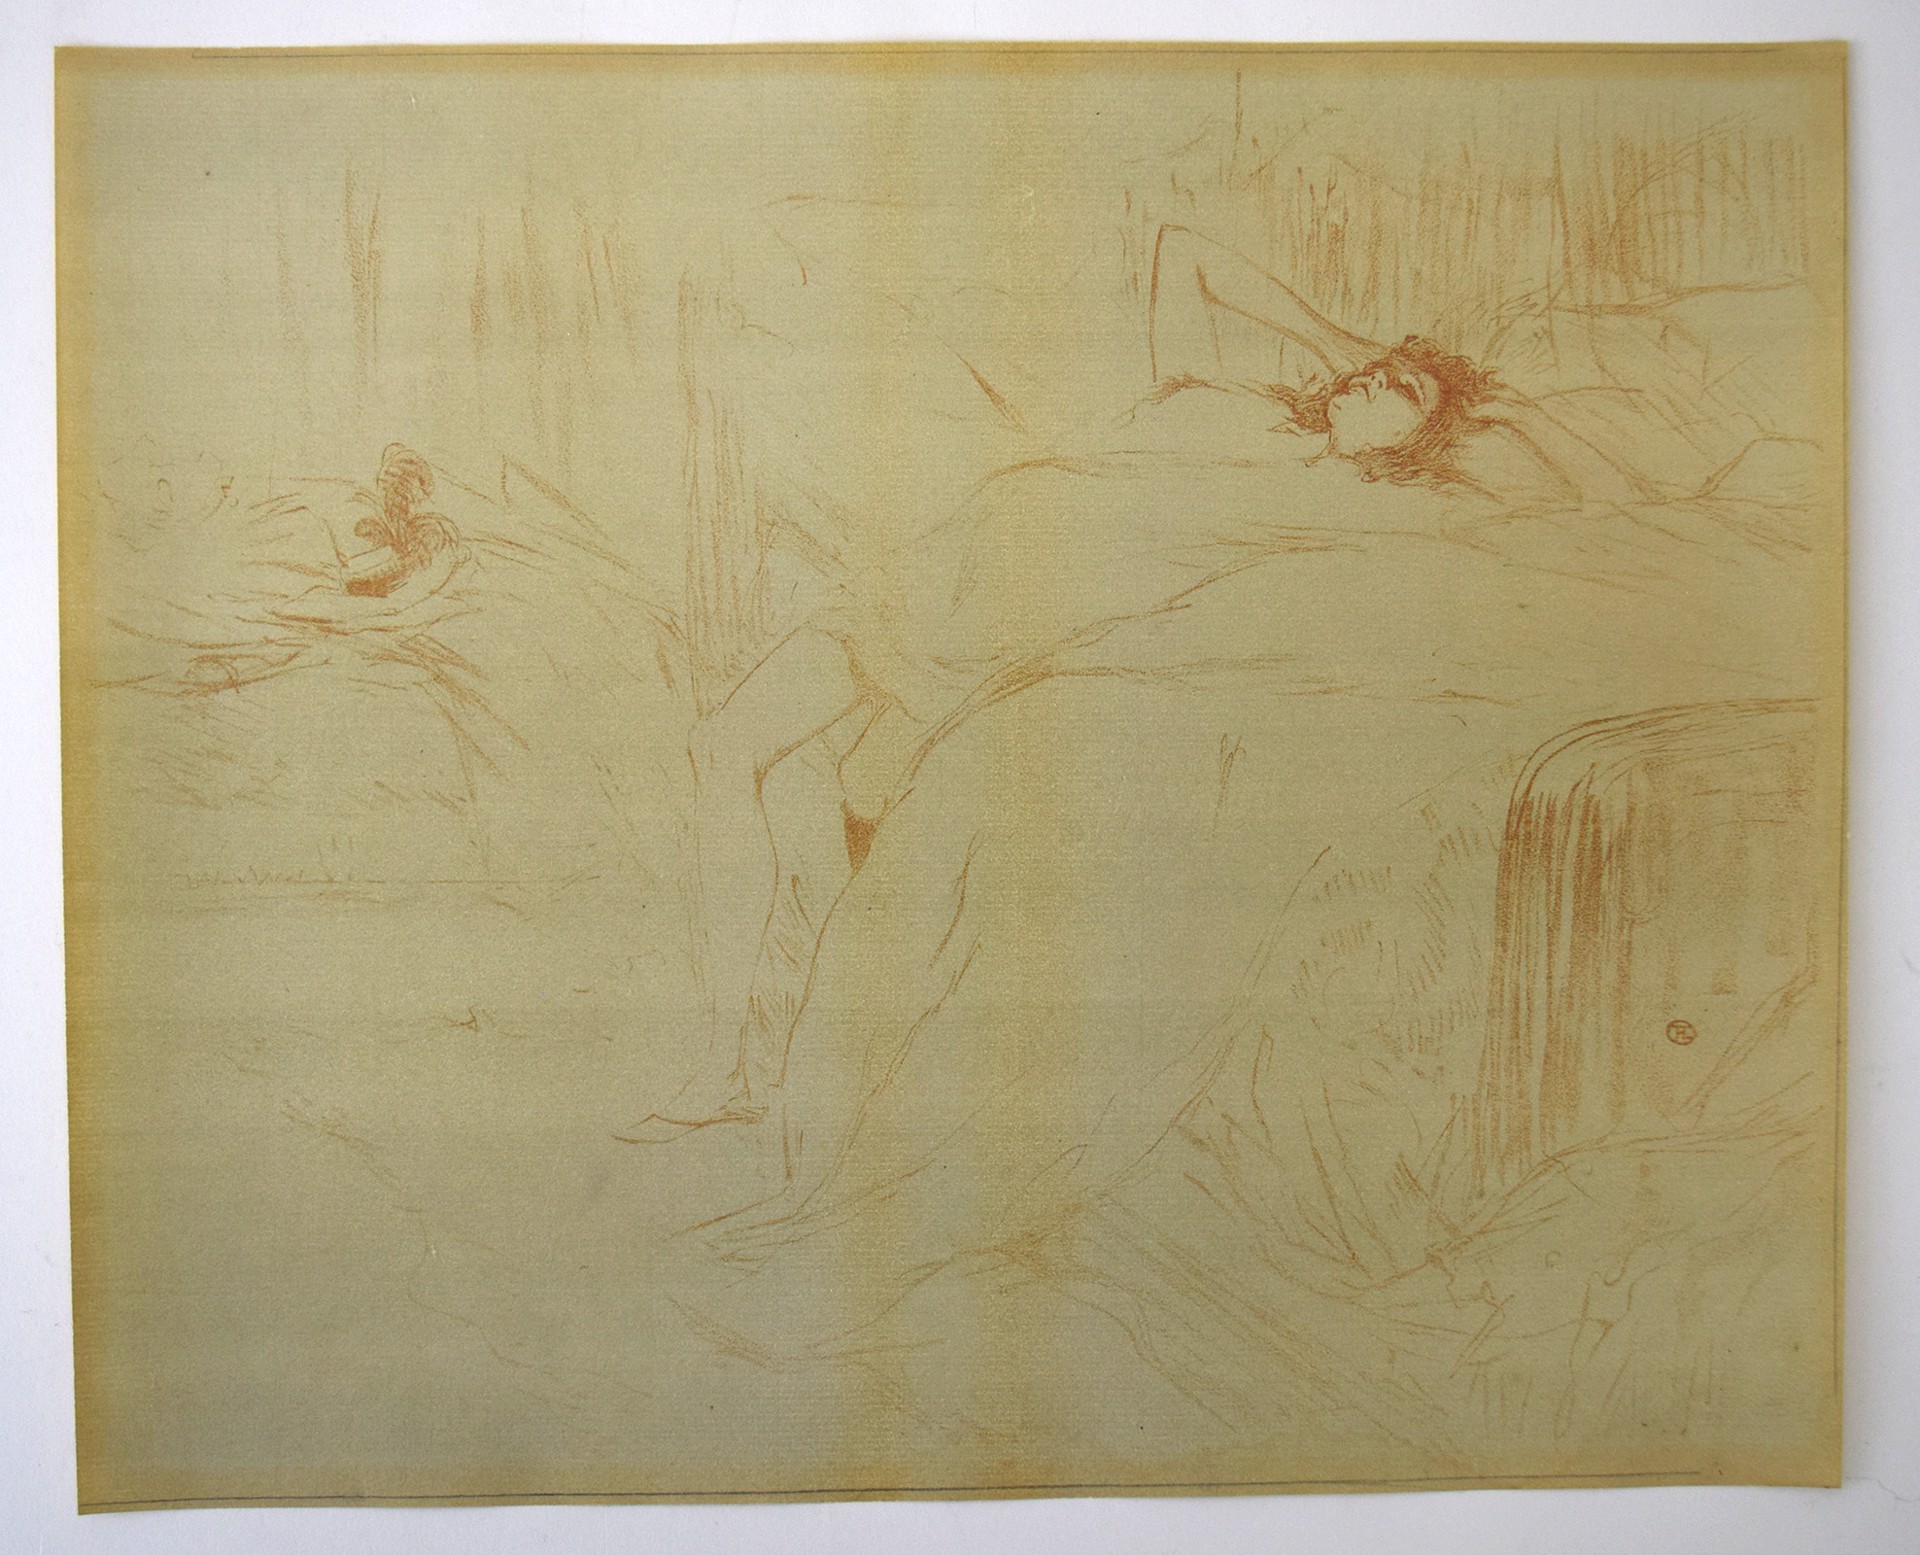 RECLINING WOMAN by Henri de Toulouse-Lautrec